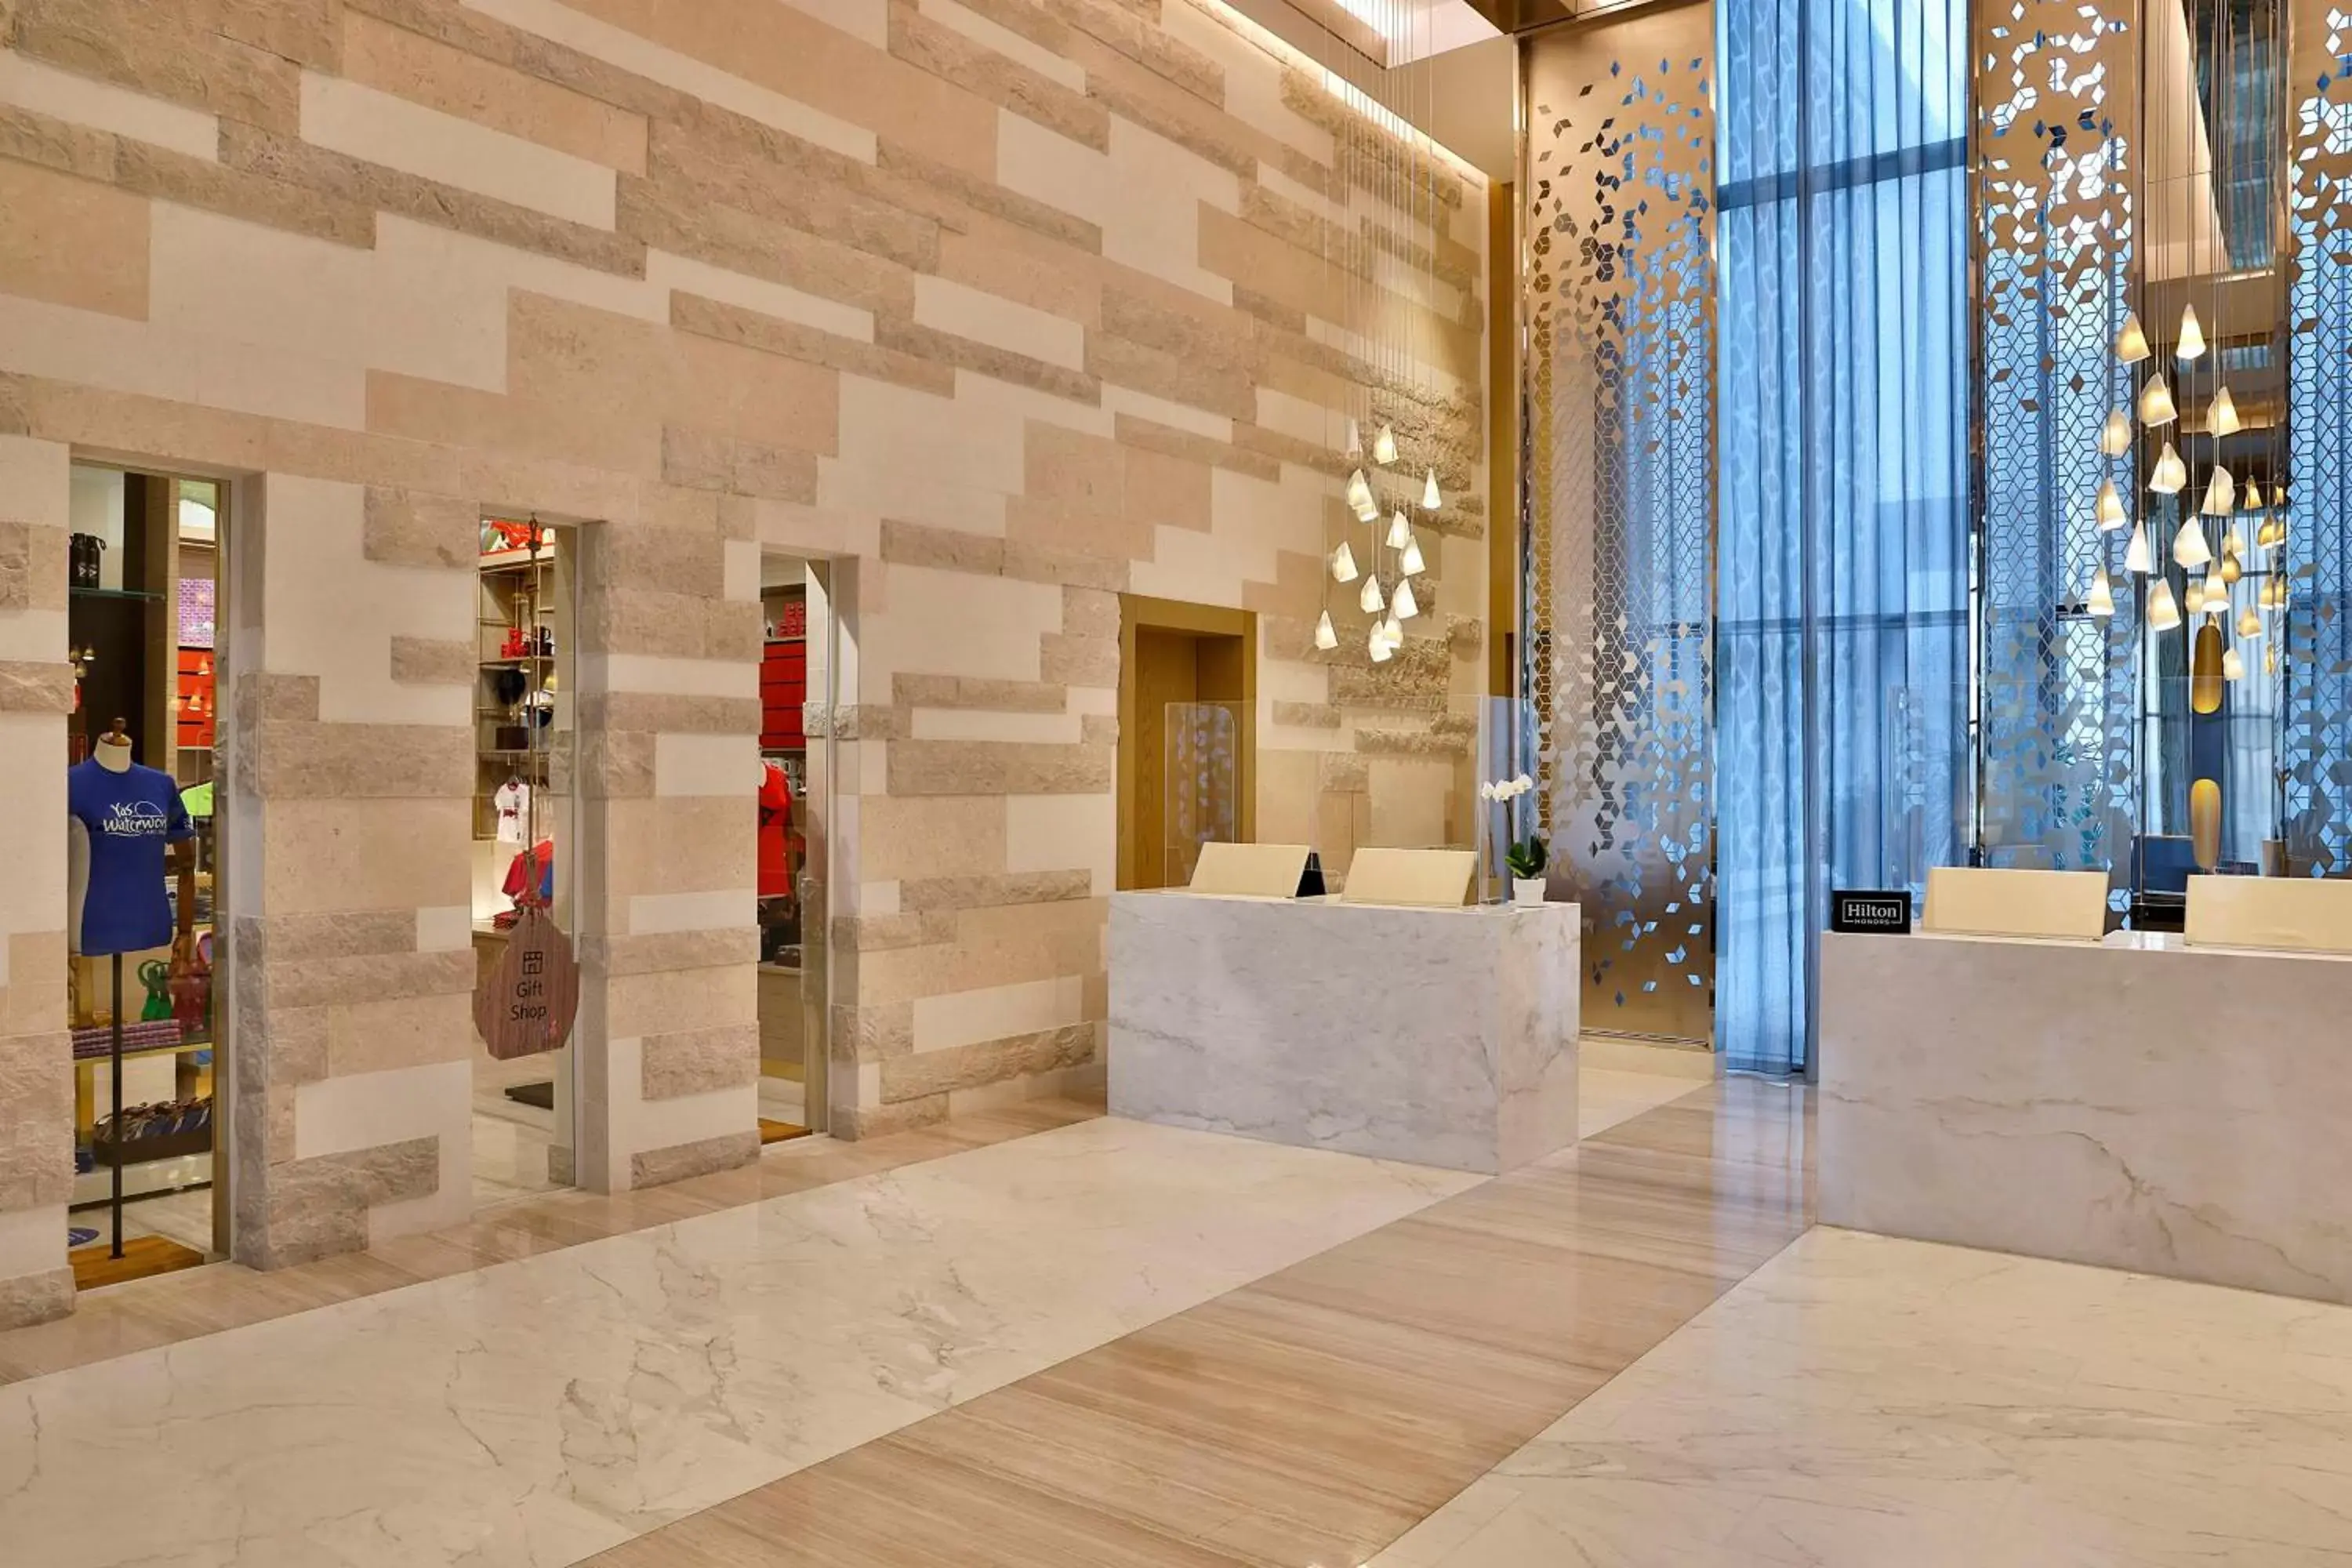 Lobby or reception in Hilton Abu Dhabi Yas Island